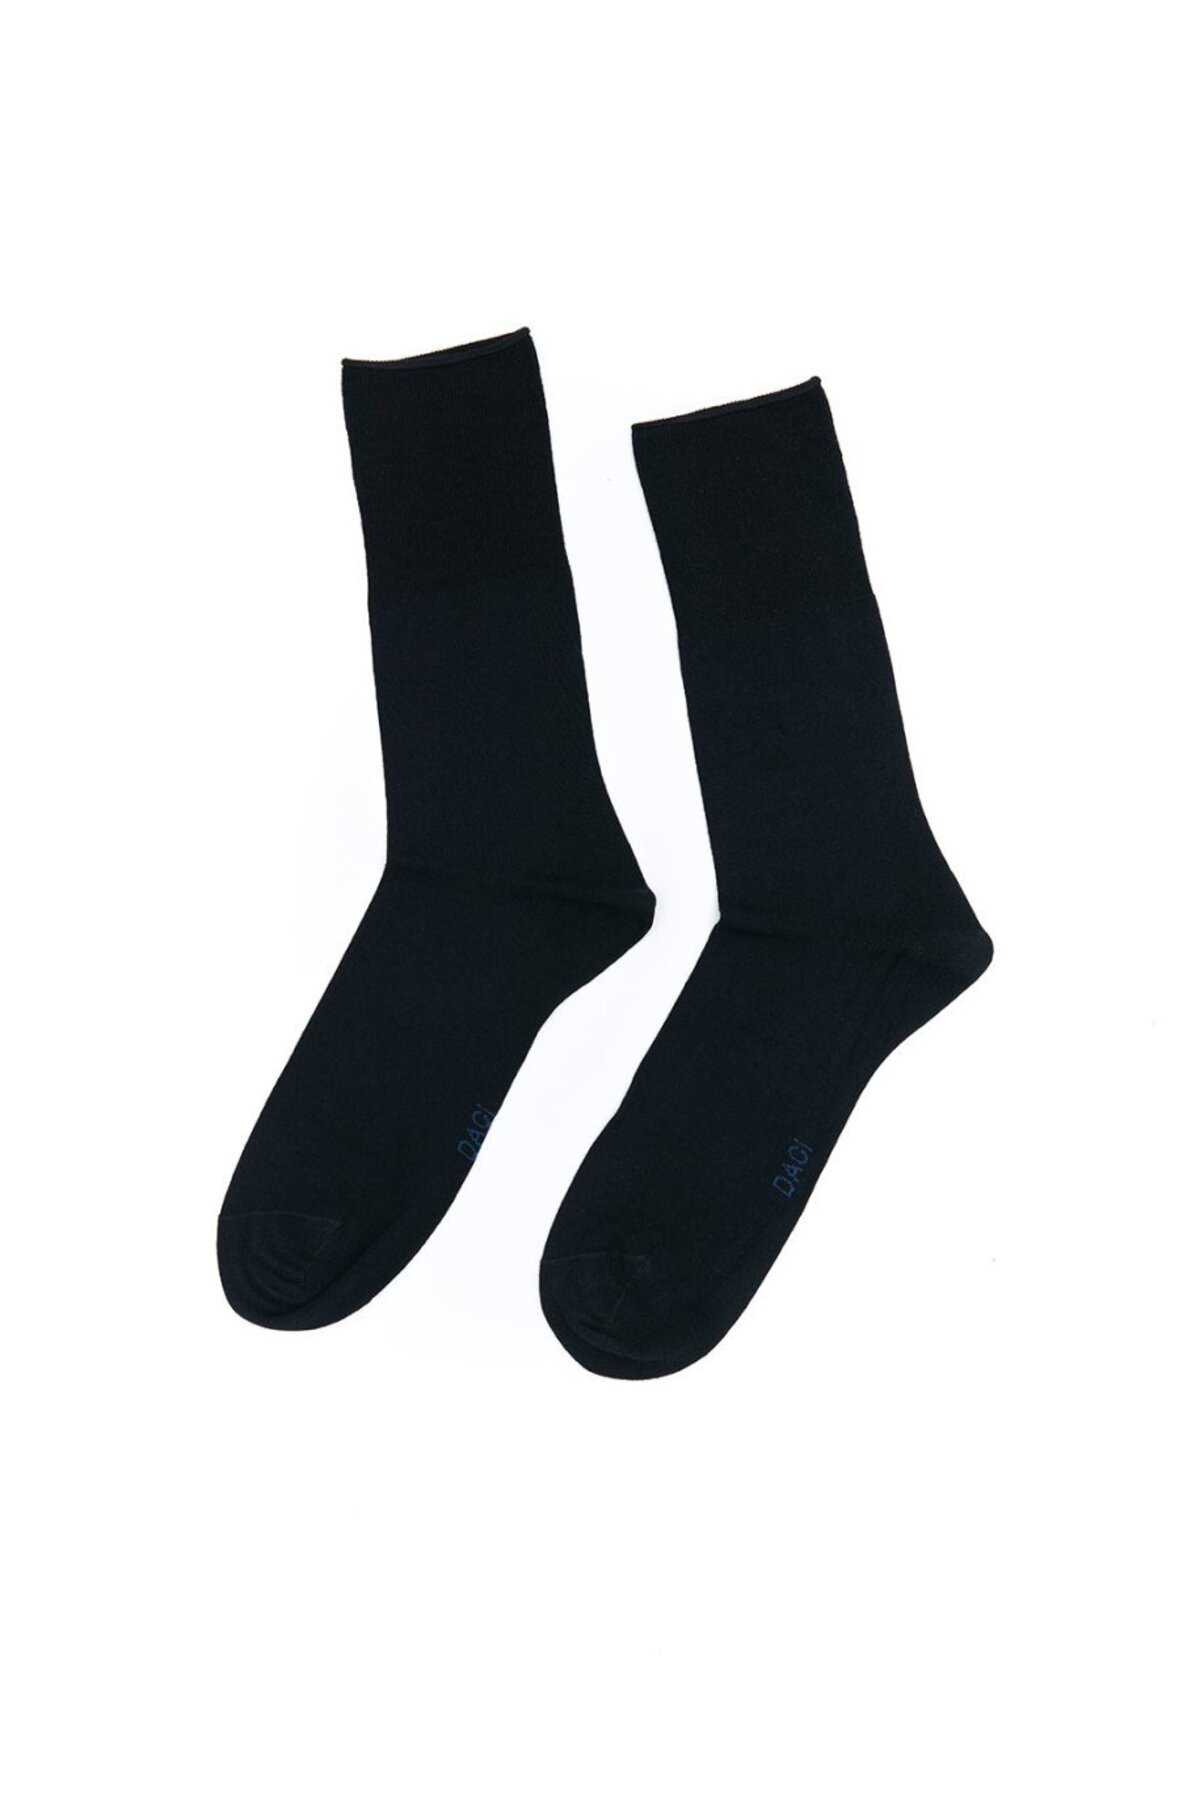 Dagi Navy Blue 2-Pack Modal 20/1 Men's Socks